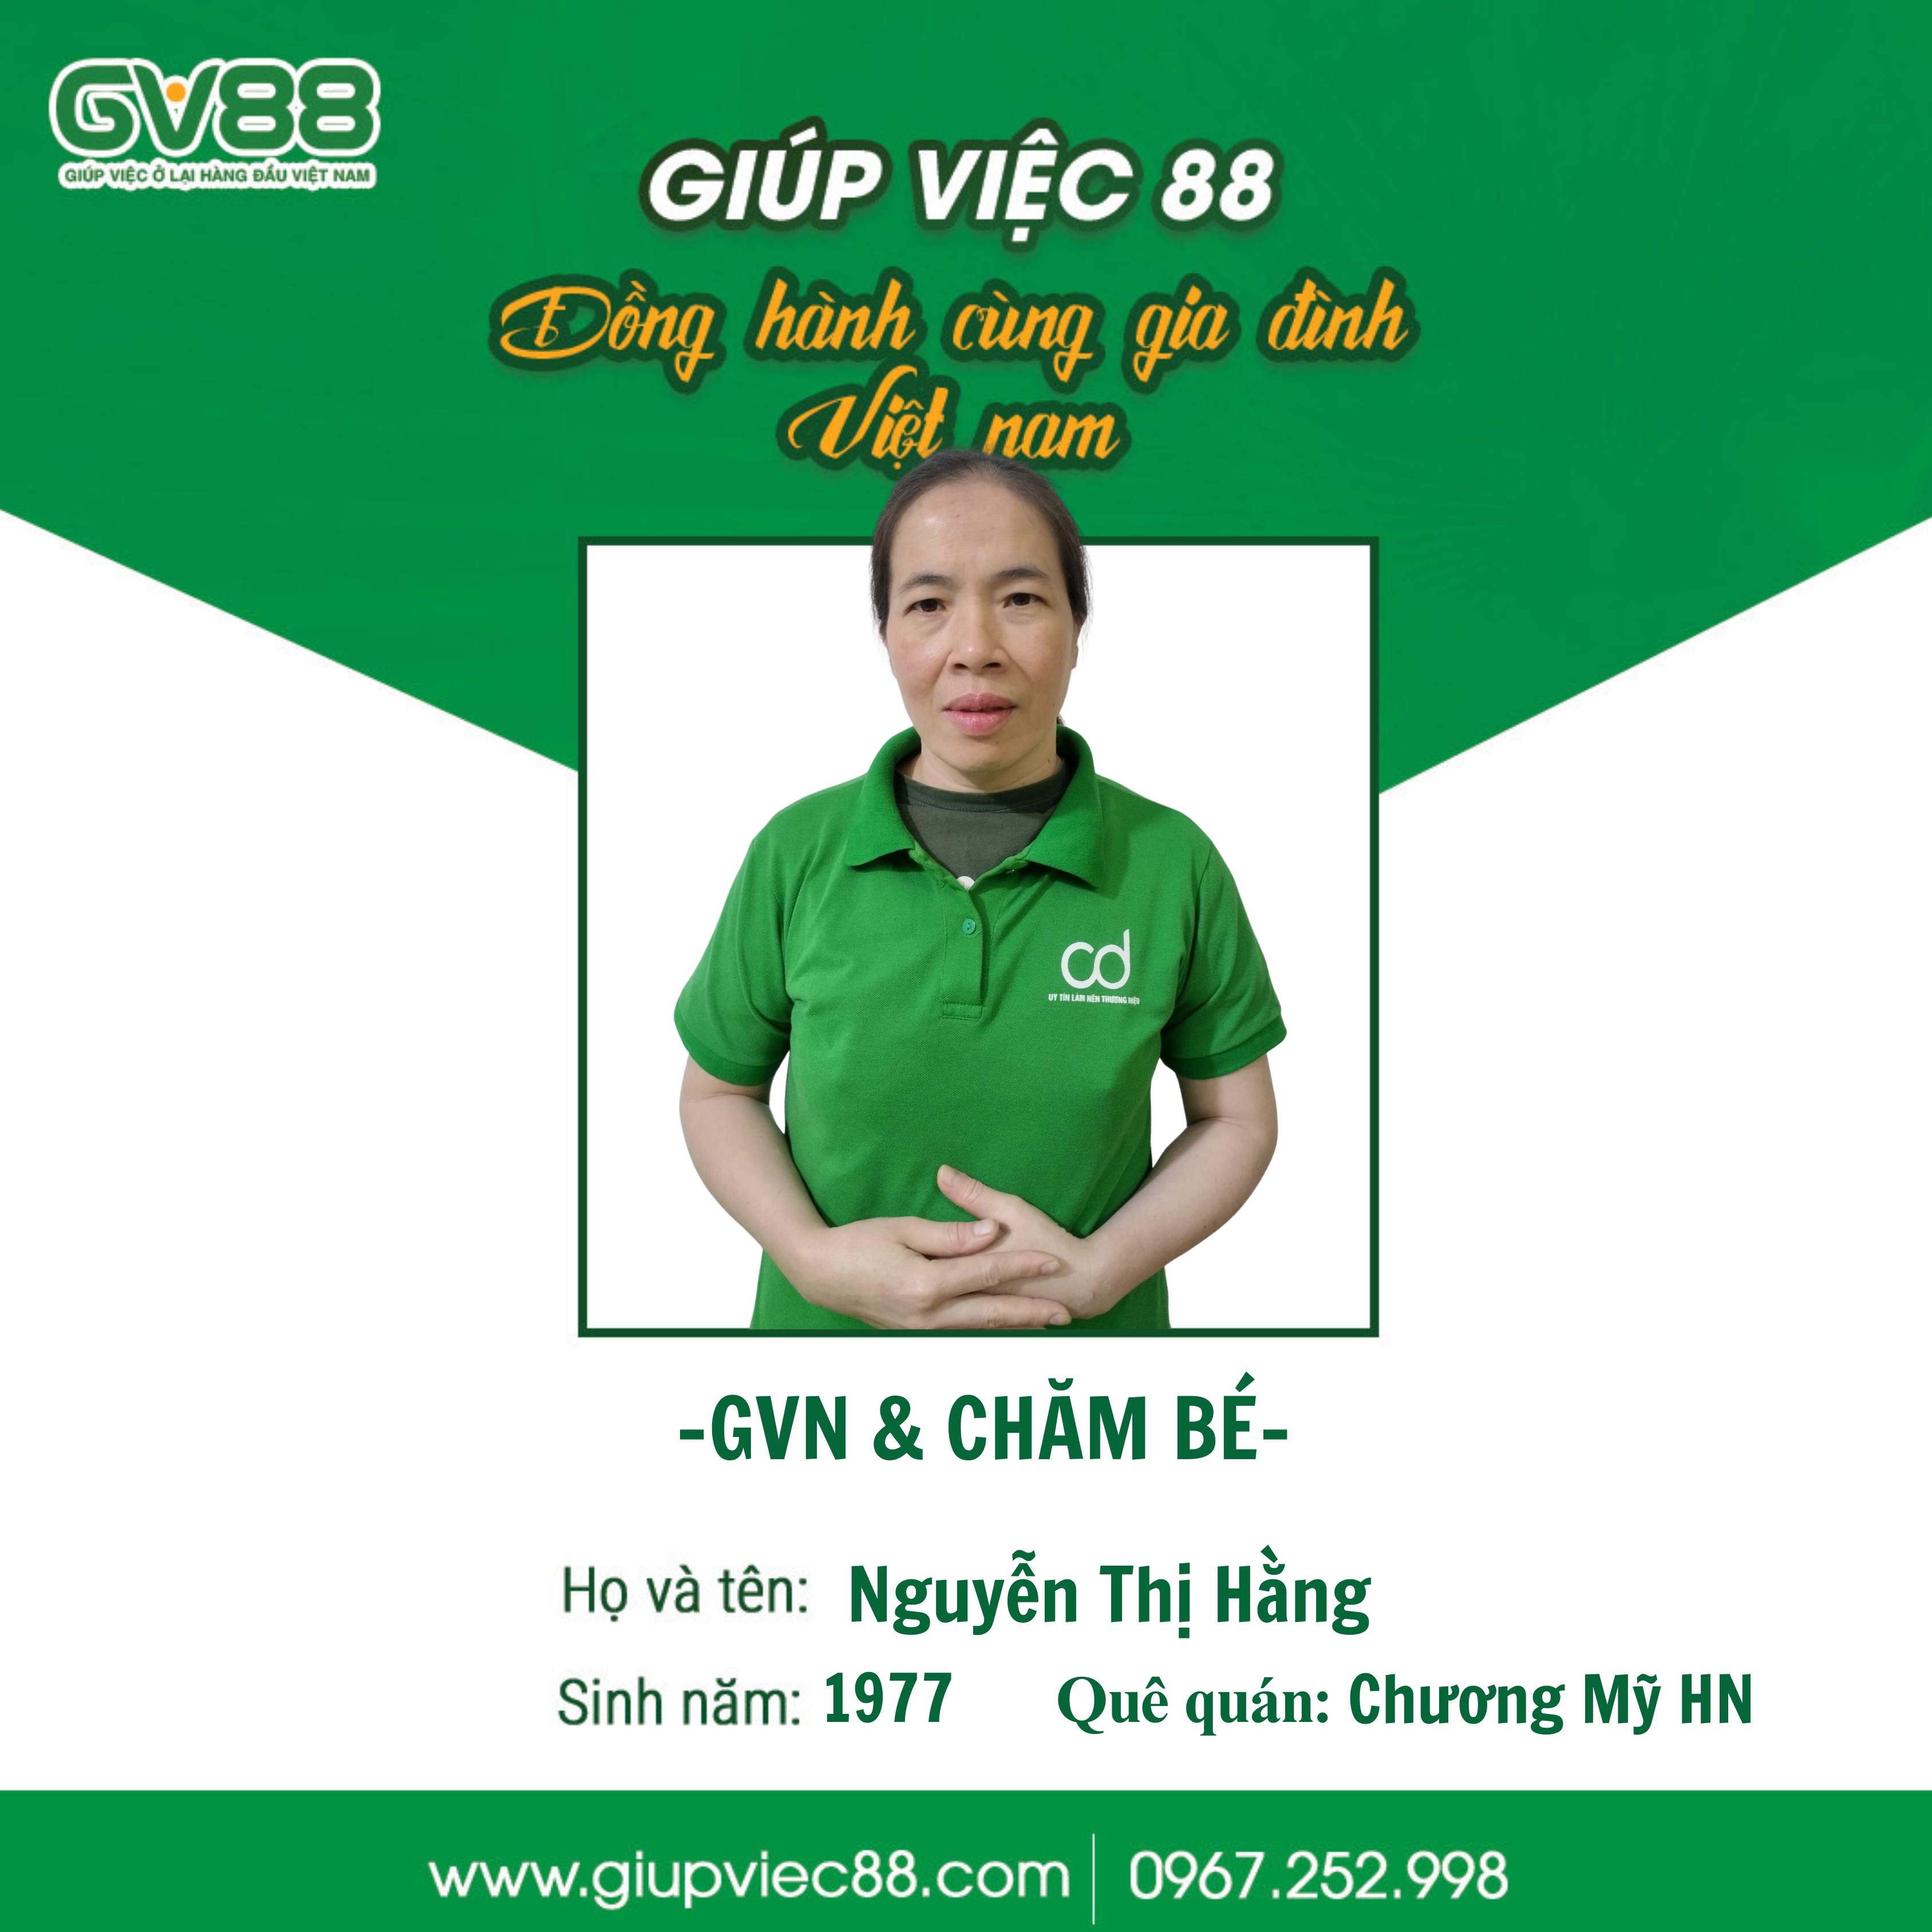 Nguyễn Thị Hằng